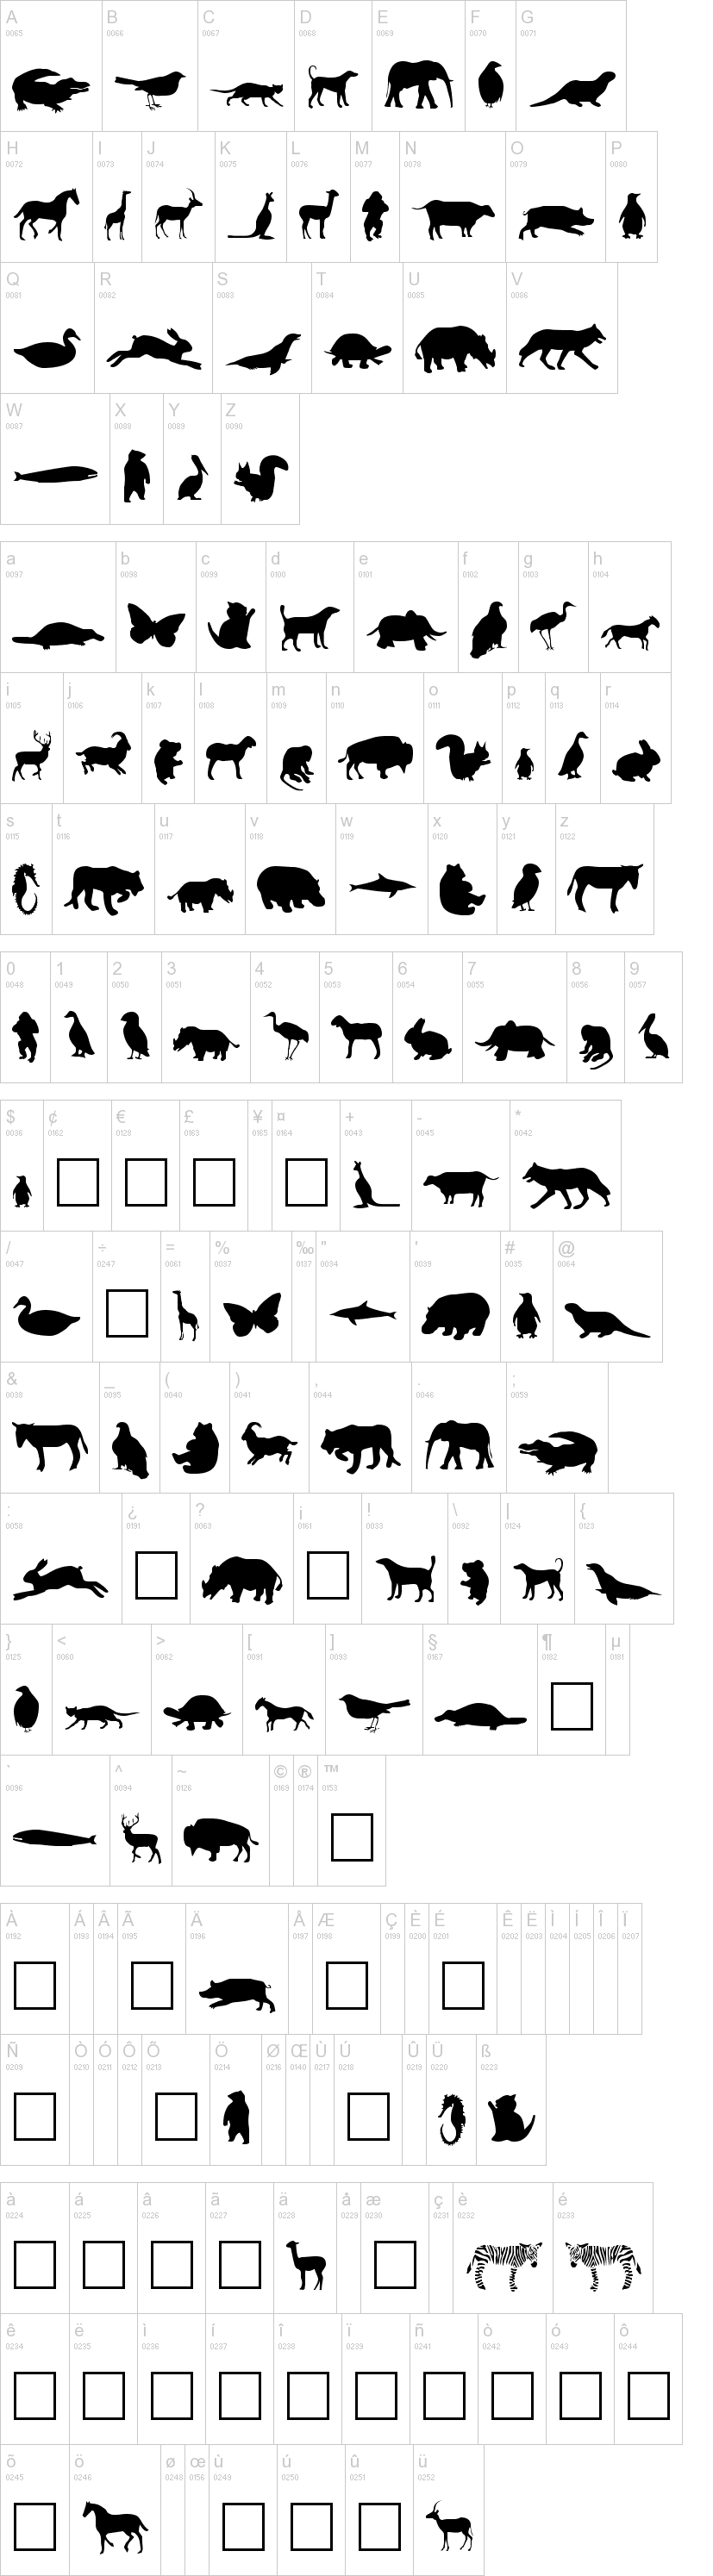 Animals字符映射图